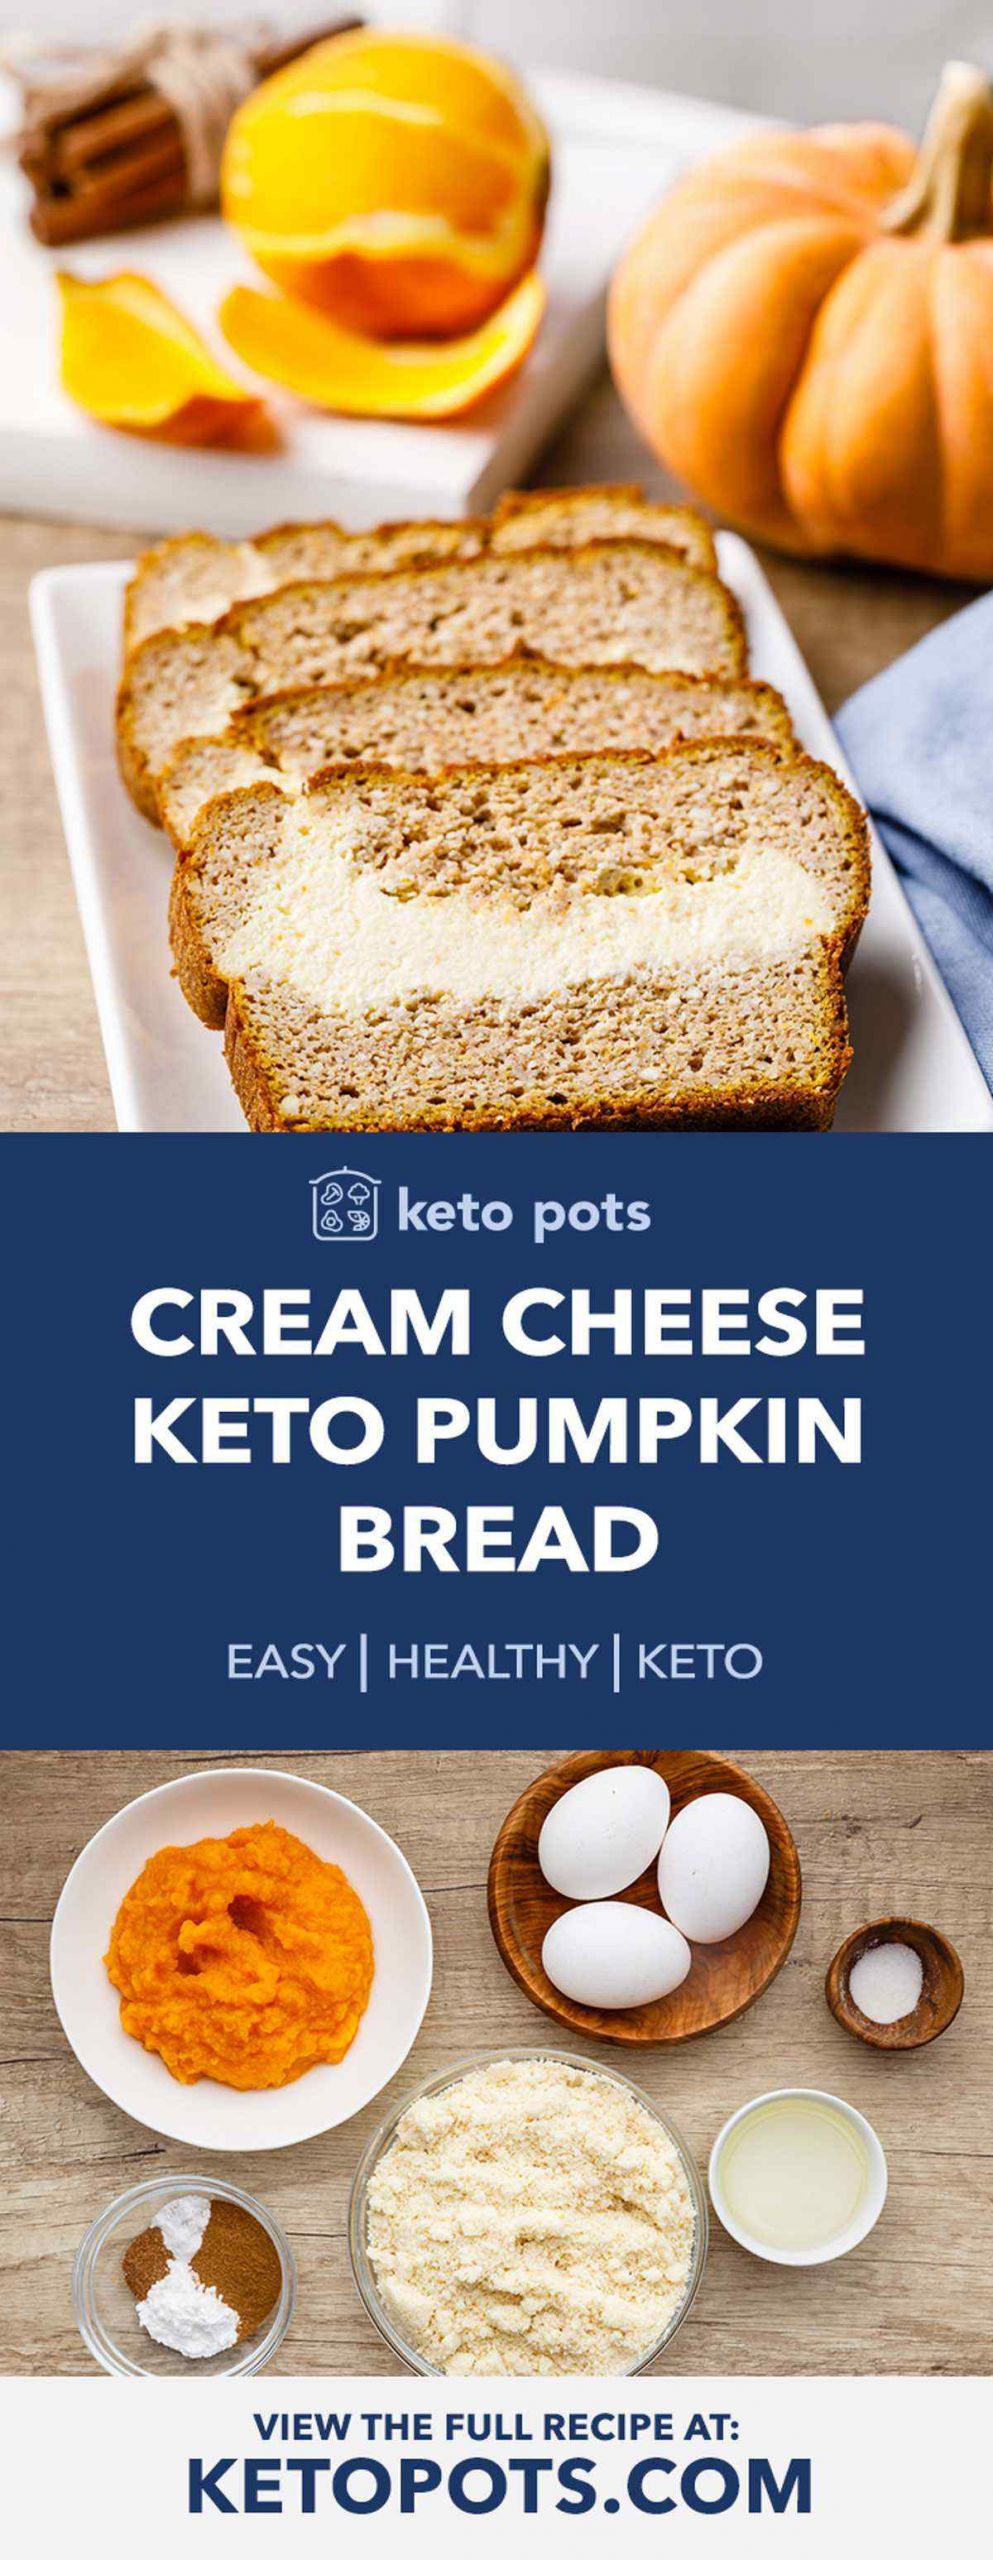 Keto Pumpkin Bread Cream Cheeses
 Quick Cream Cheese Keto Pumpkin Bread Keto Pots